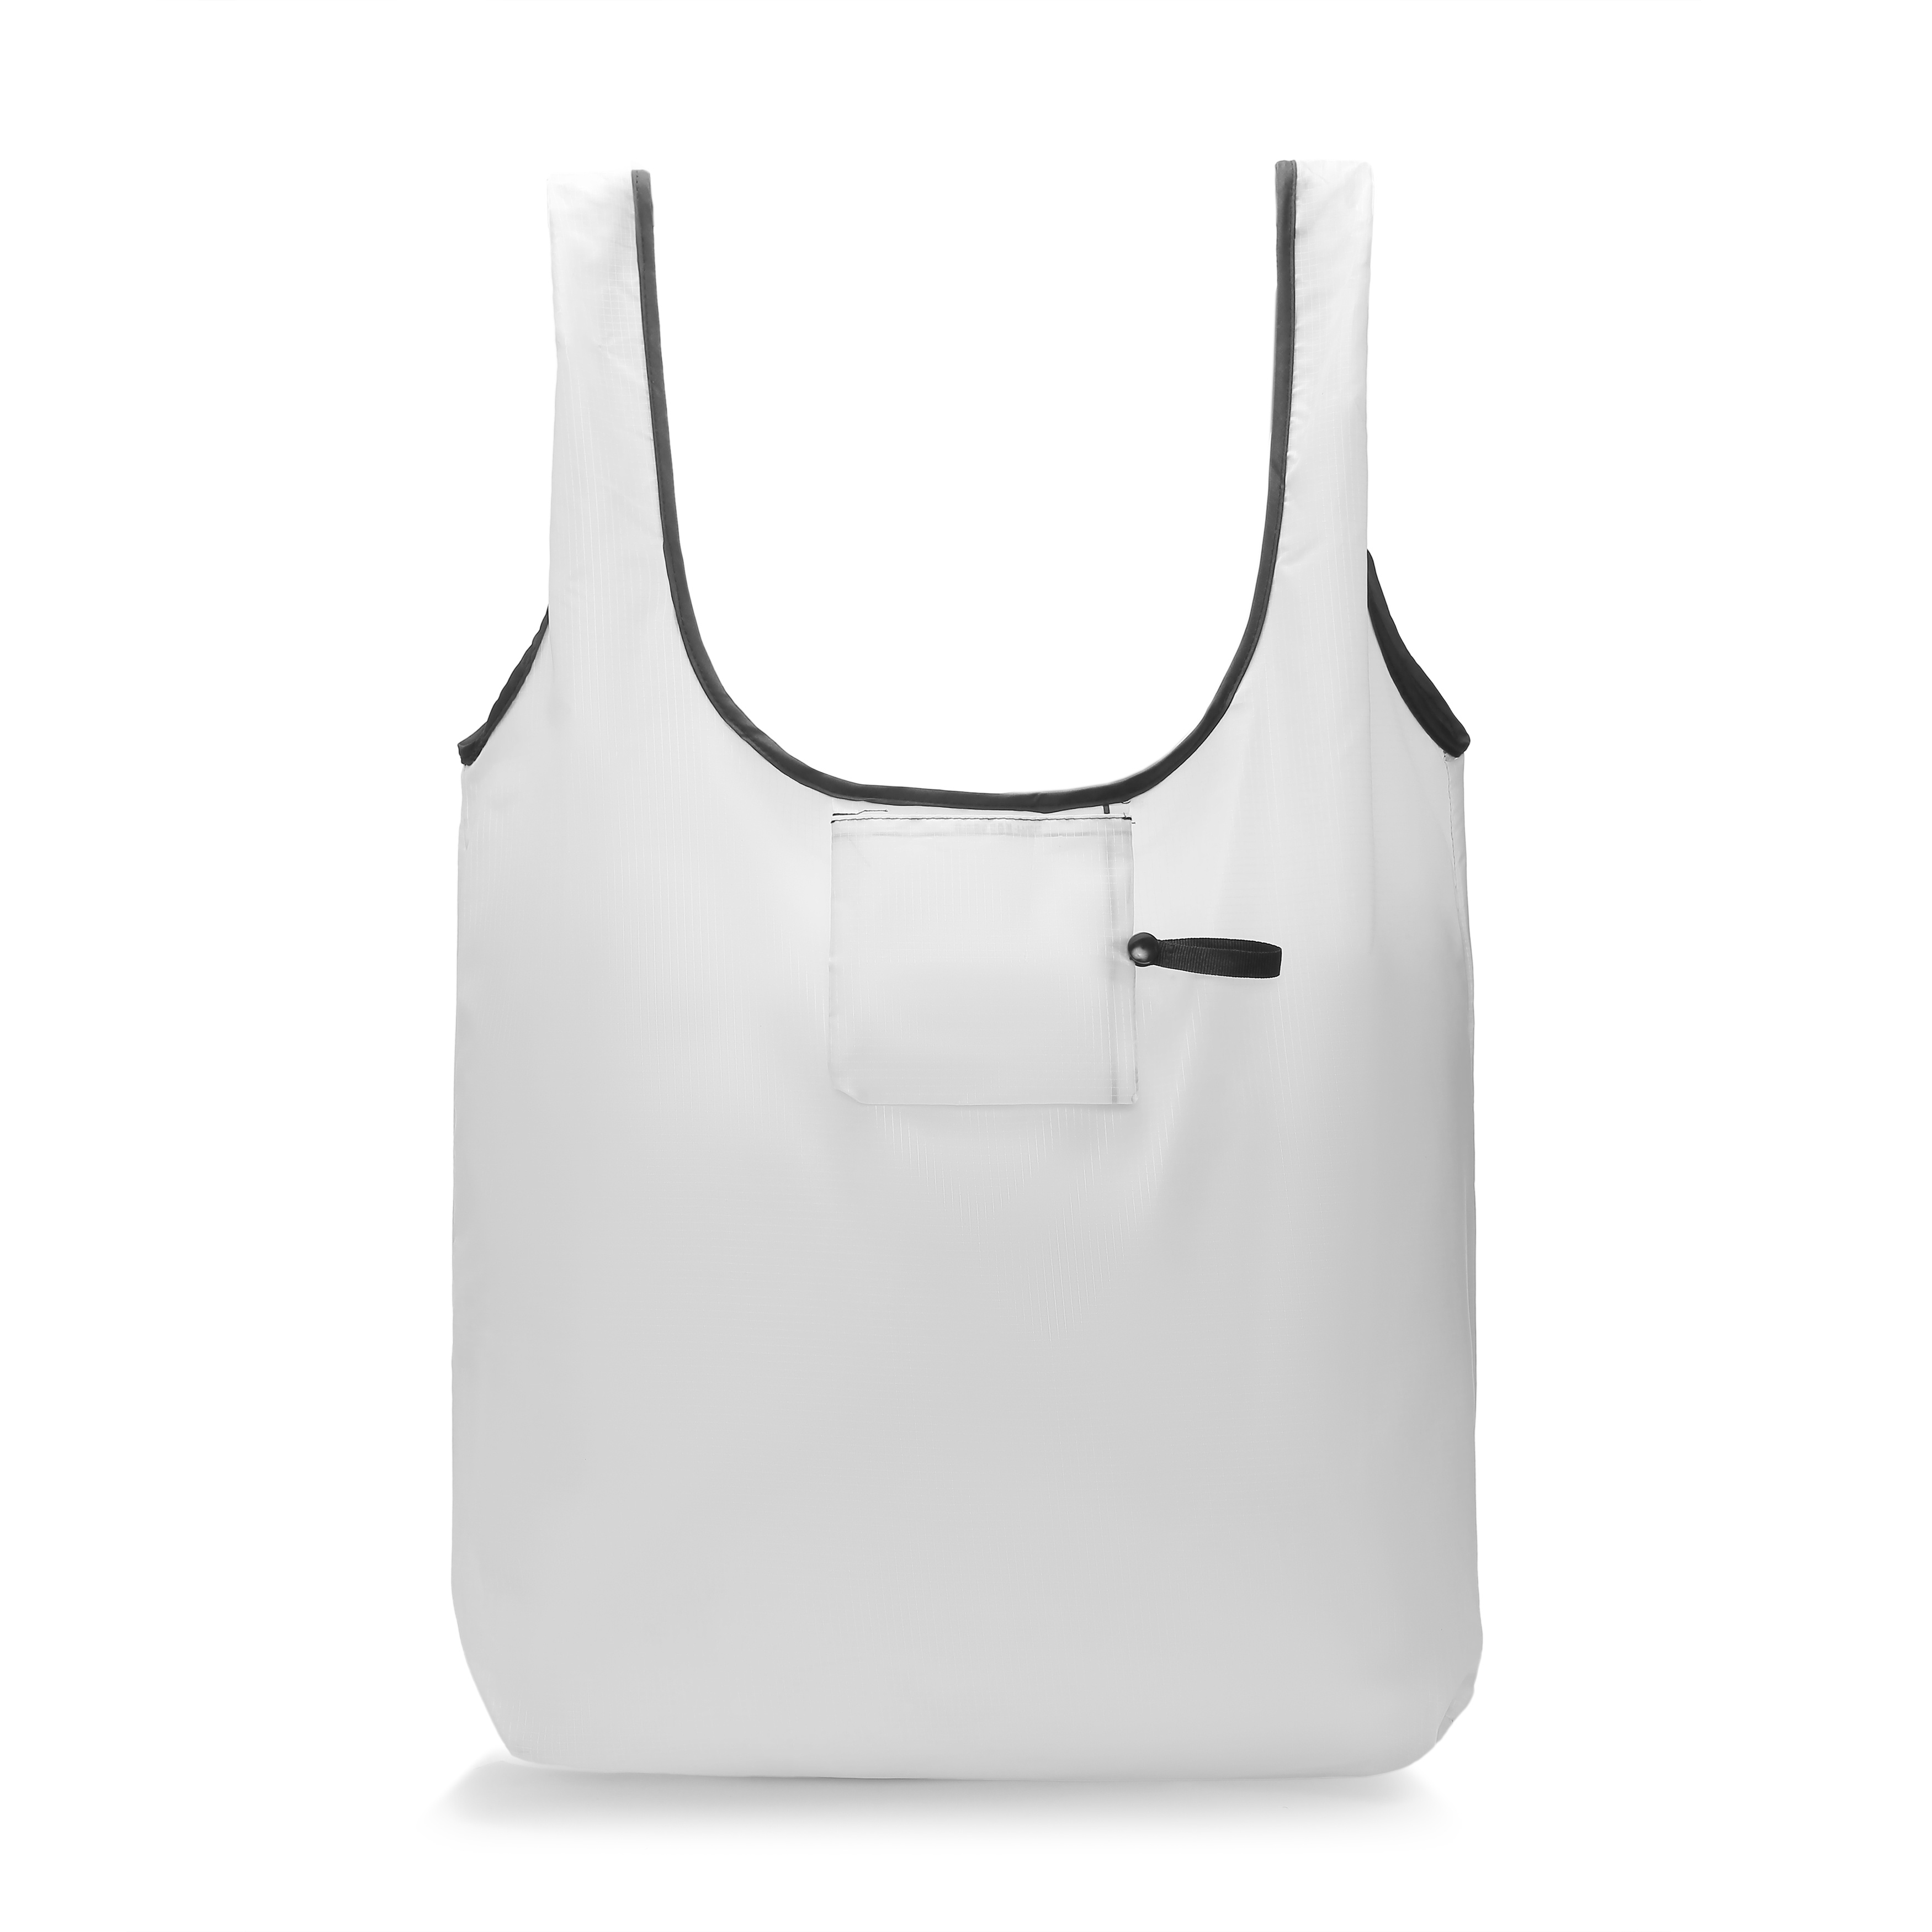 All-Over Print Foldable Shopping Bag | Print On Demand